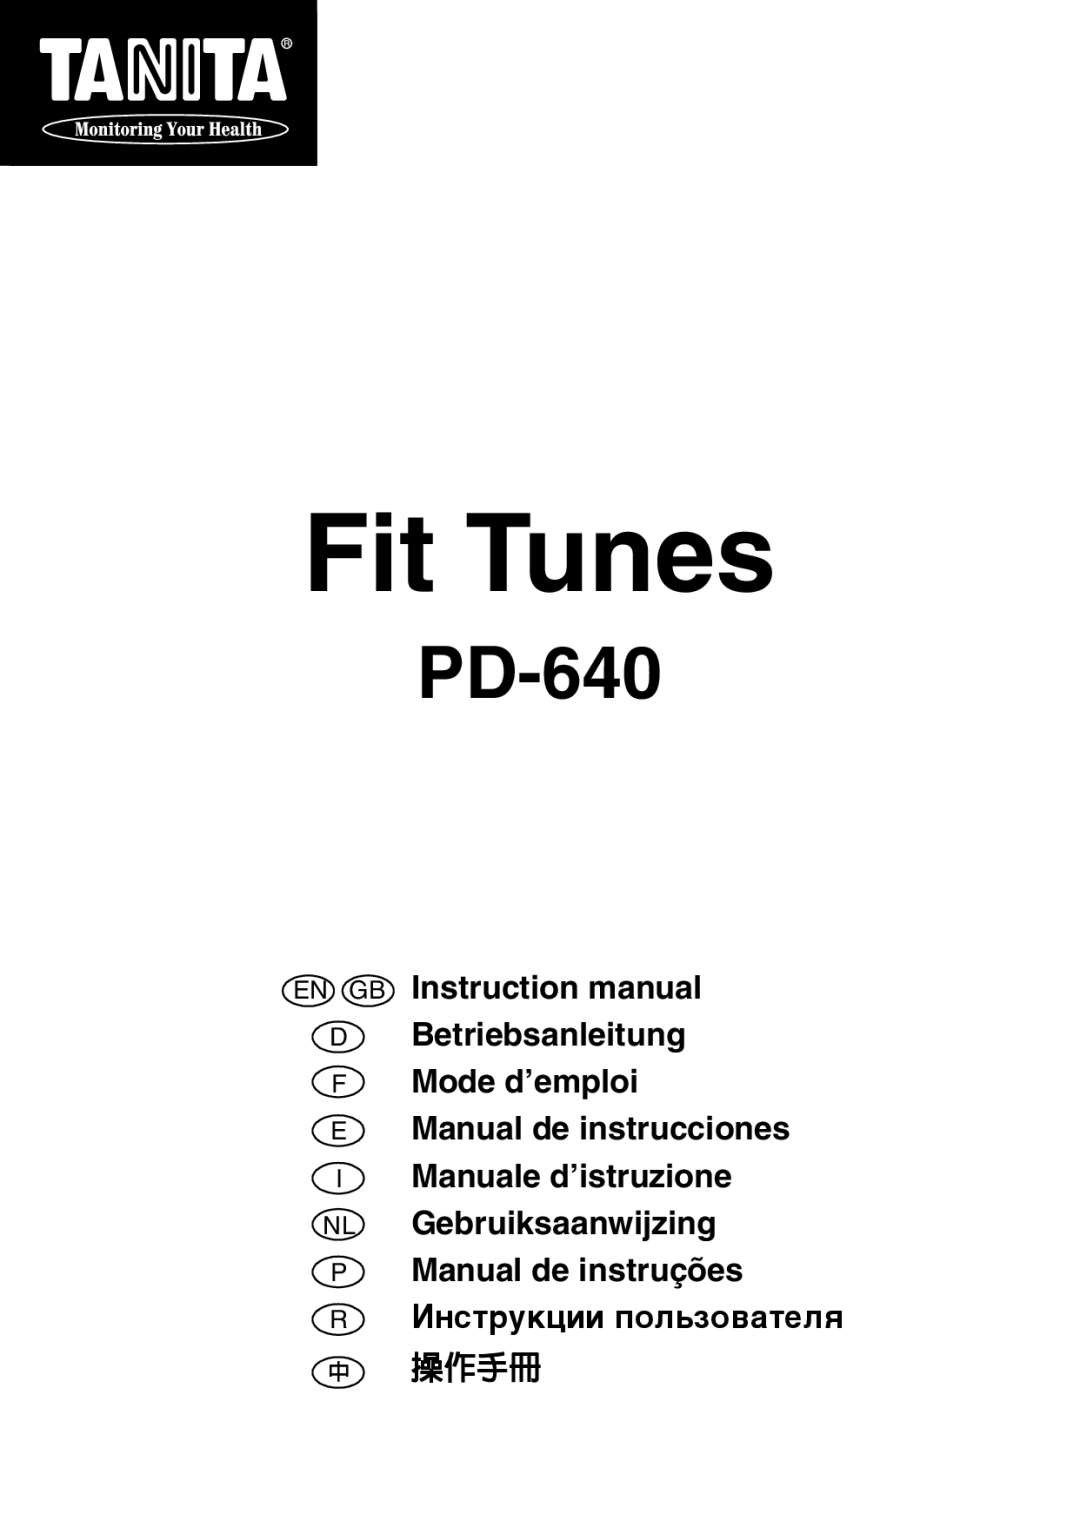 Tanita PD640 instruction manual Fit Tunes, PD-640, Betriebsanleitung, Mode d’emploi, Manual de instrucciones, 中 操作手冊 